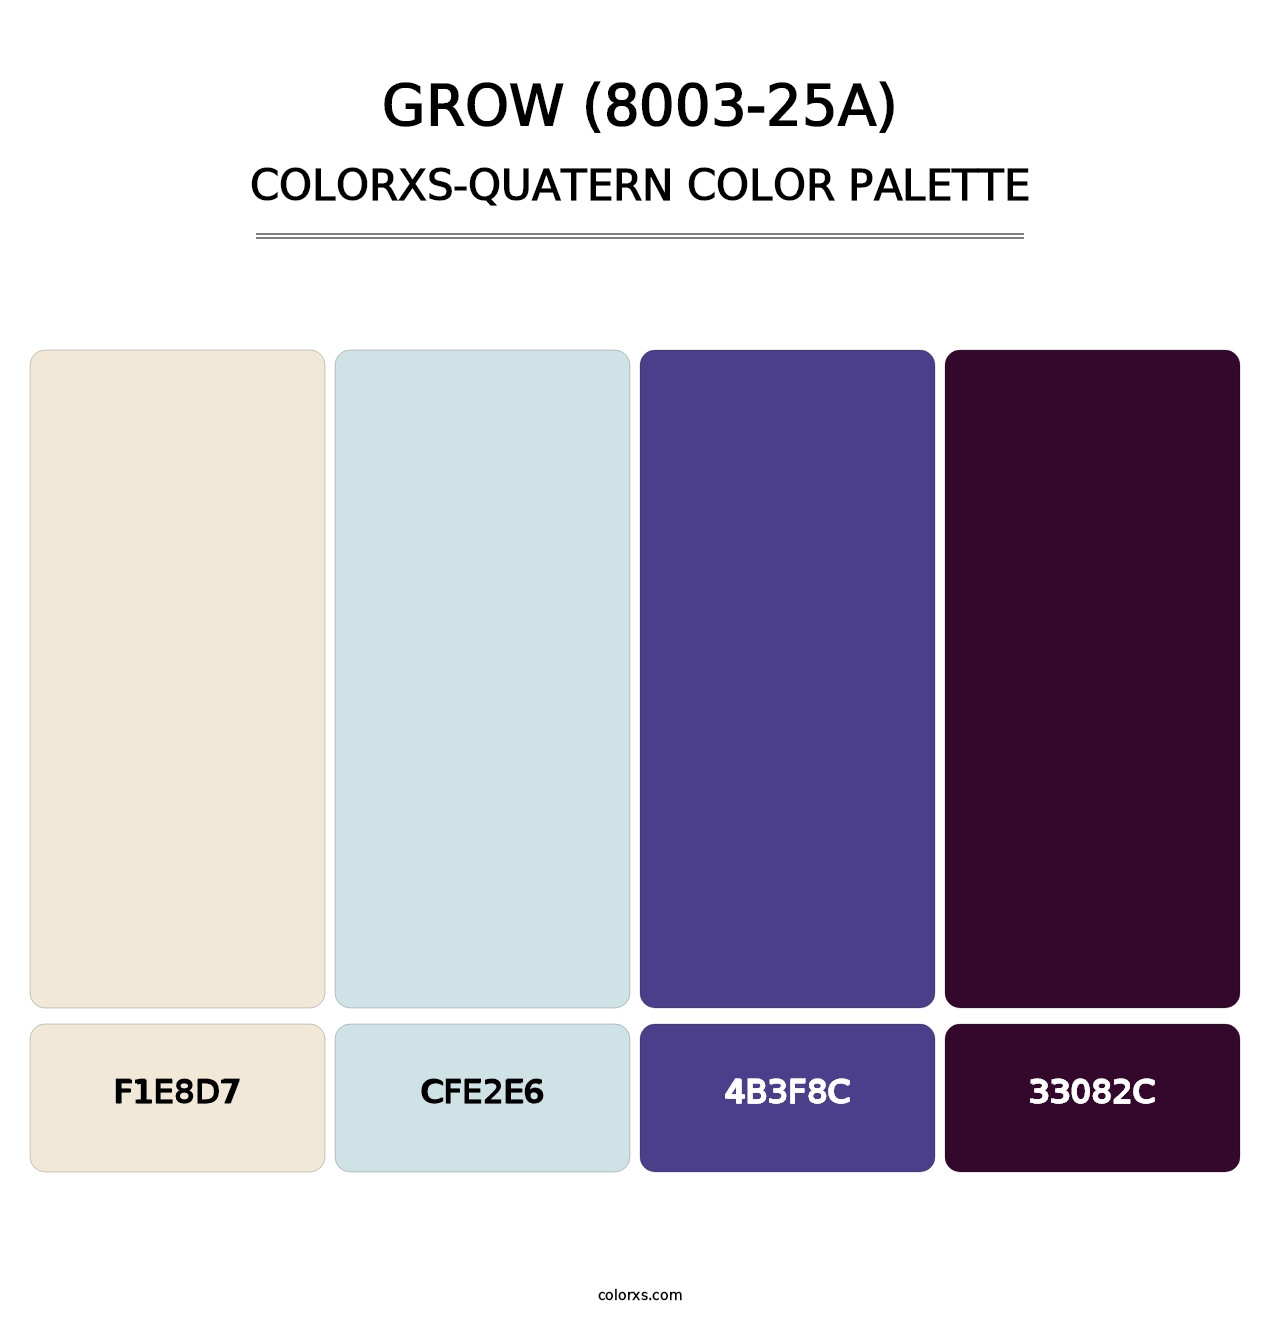 Grow (8003-25A) - Colorxs Quatern Palette